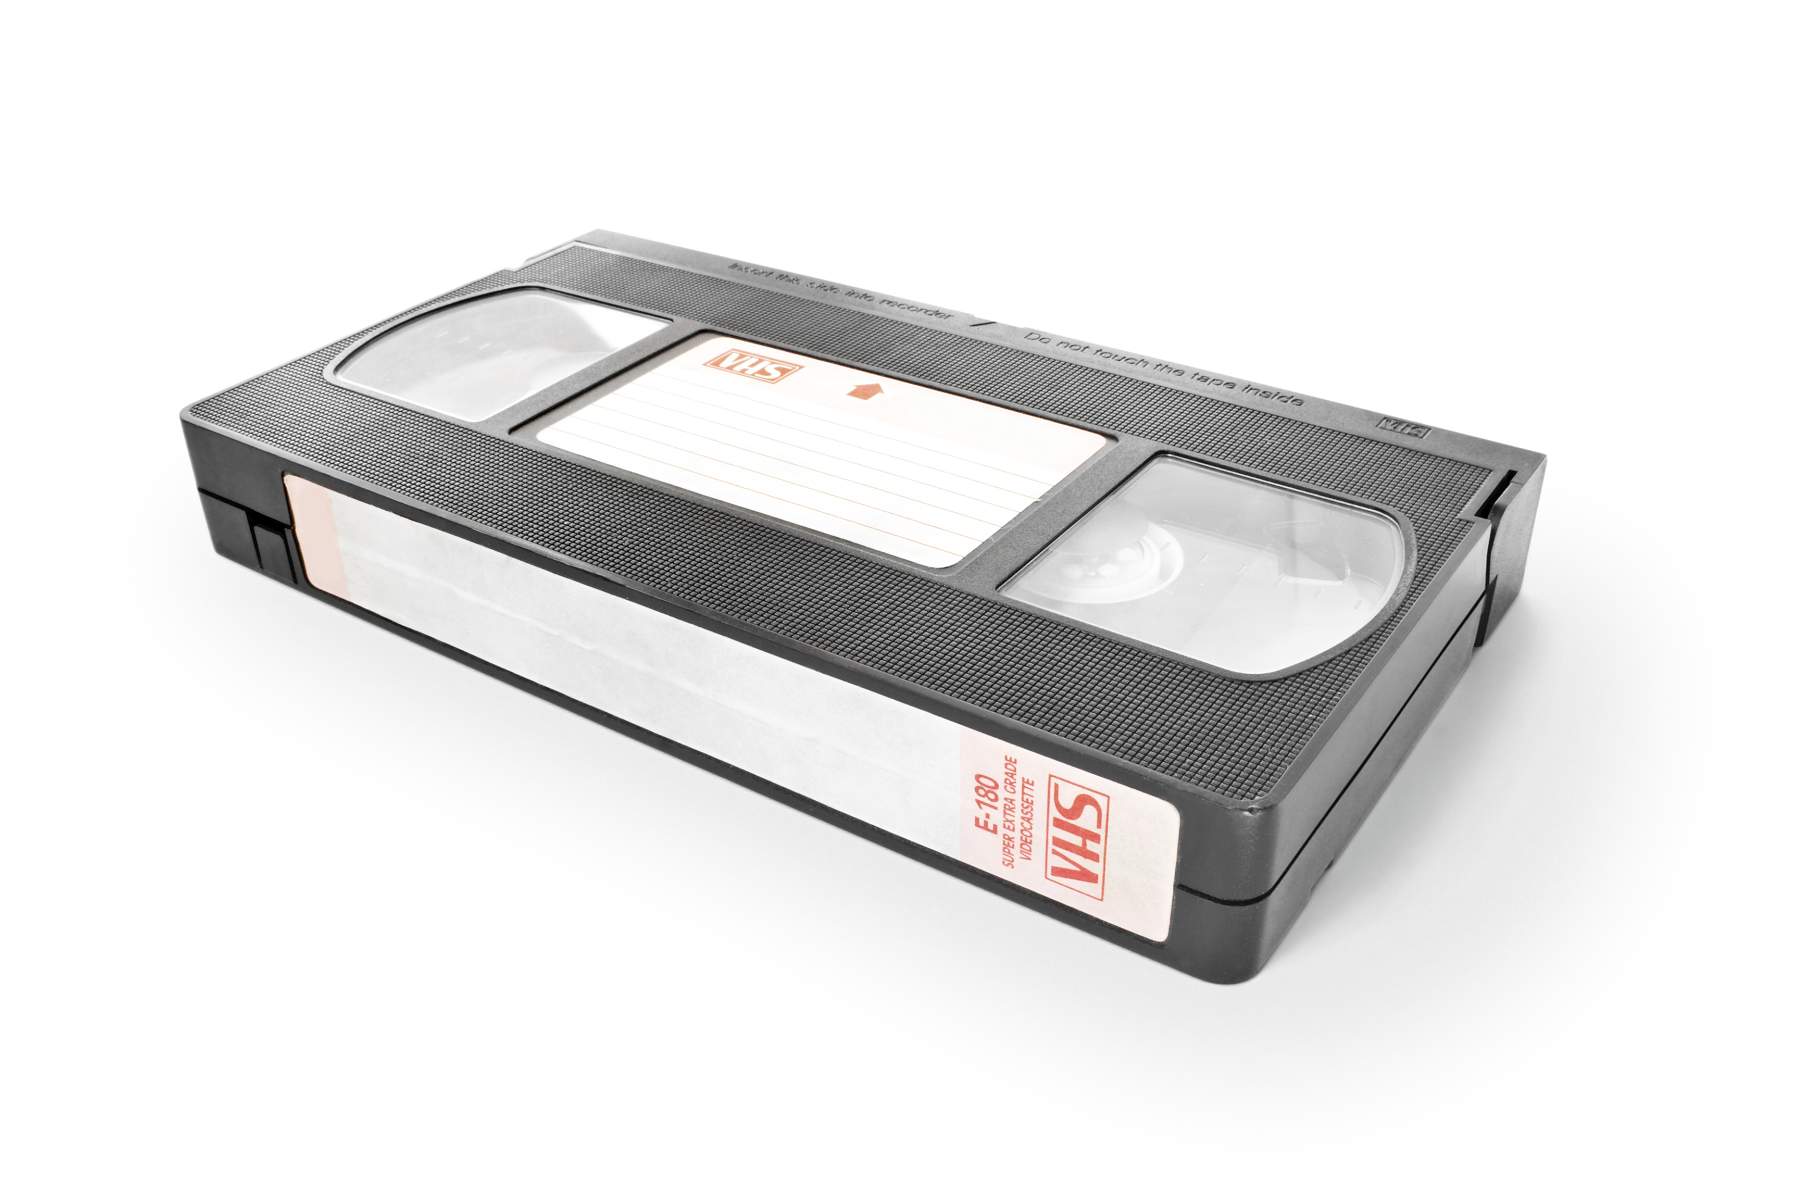 VHS videokazety do digitální podoby, žádný problém.